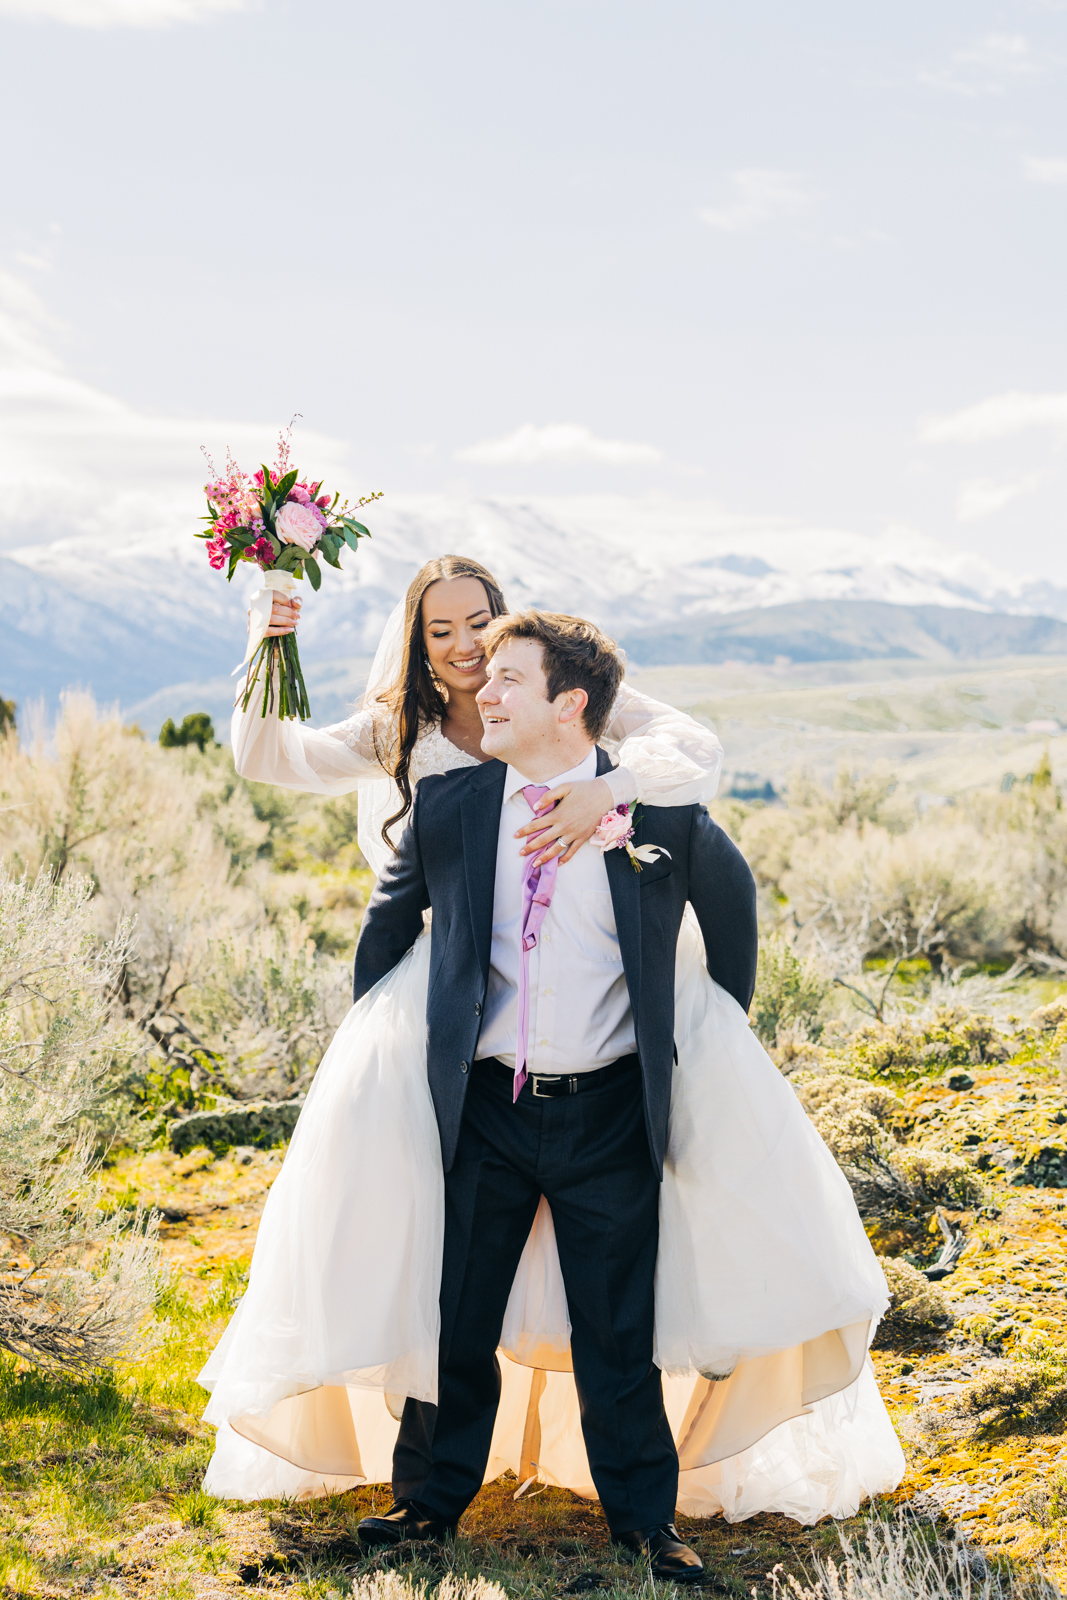 Jackson Hole wedding photographer captures bride and groom celebrating 